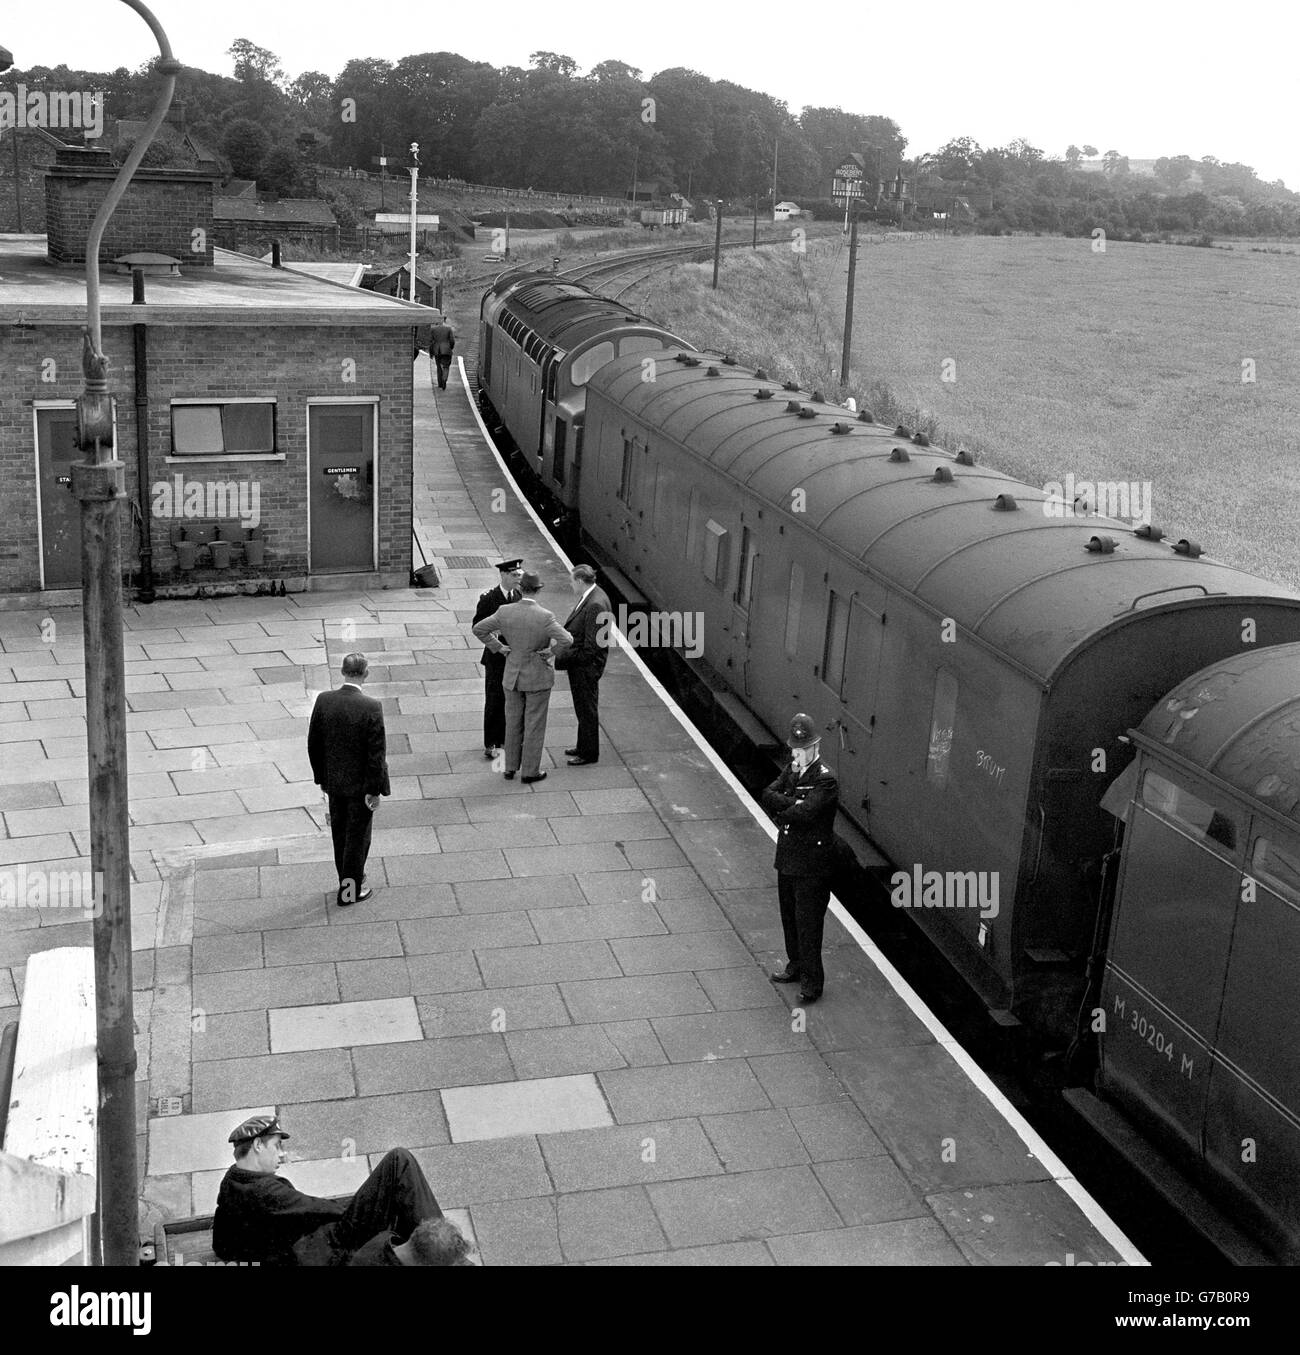 Les entraîneurs du train impliqués dans le vol postal de 2.5 millions - le "grand vol de train" - sous garde de police à la gare de Cheddington, Buckinghamshire, en août 1963. Banque D'Images